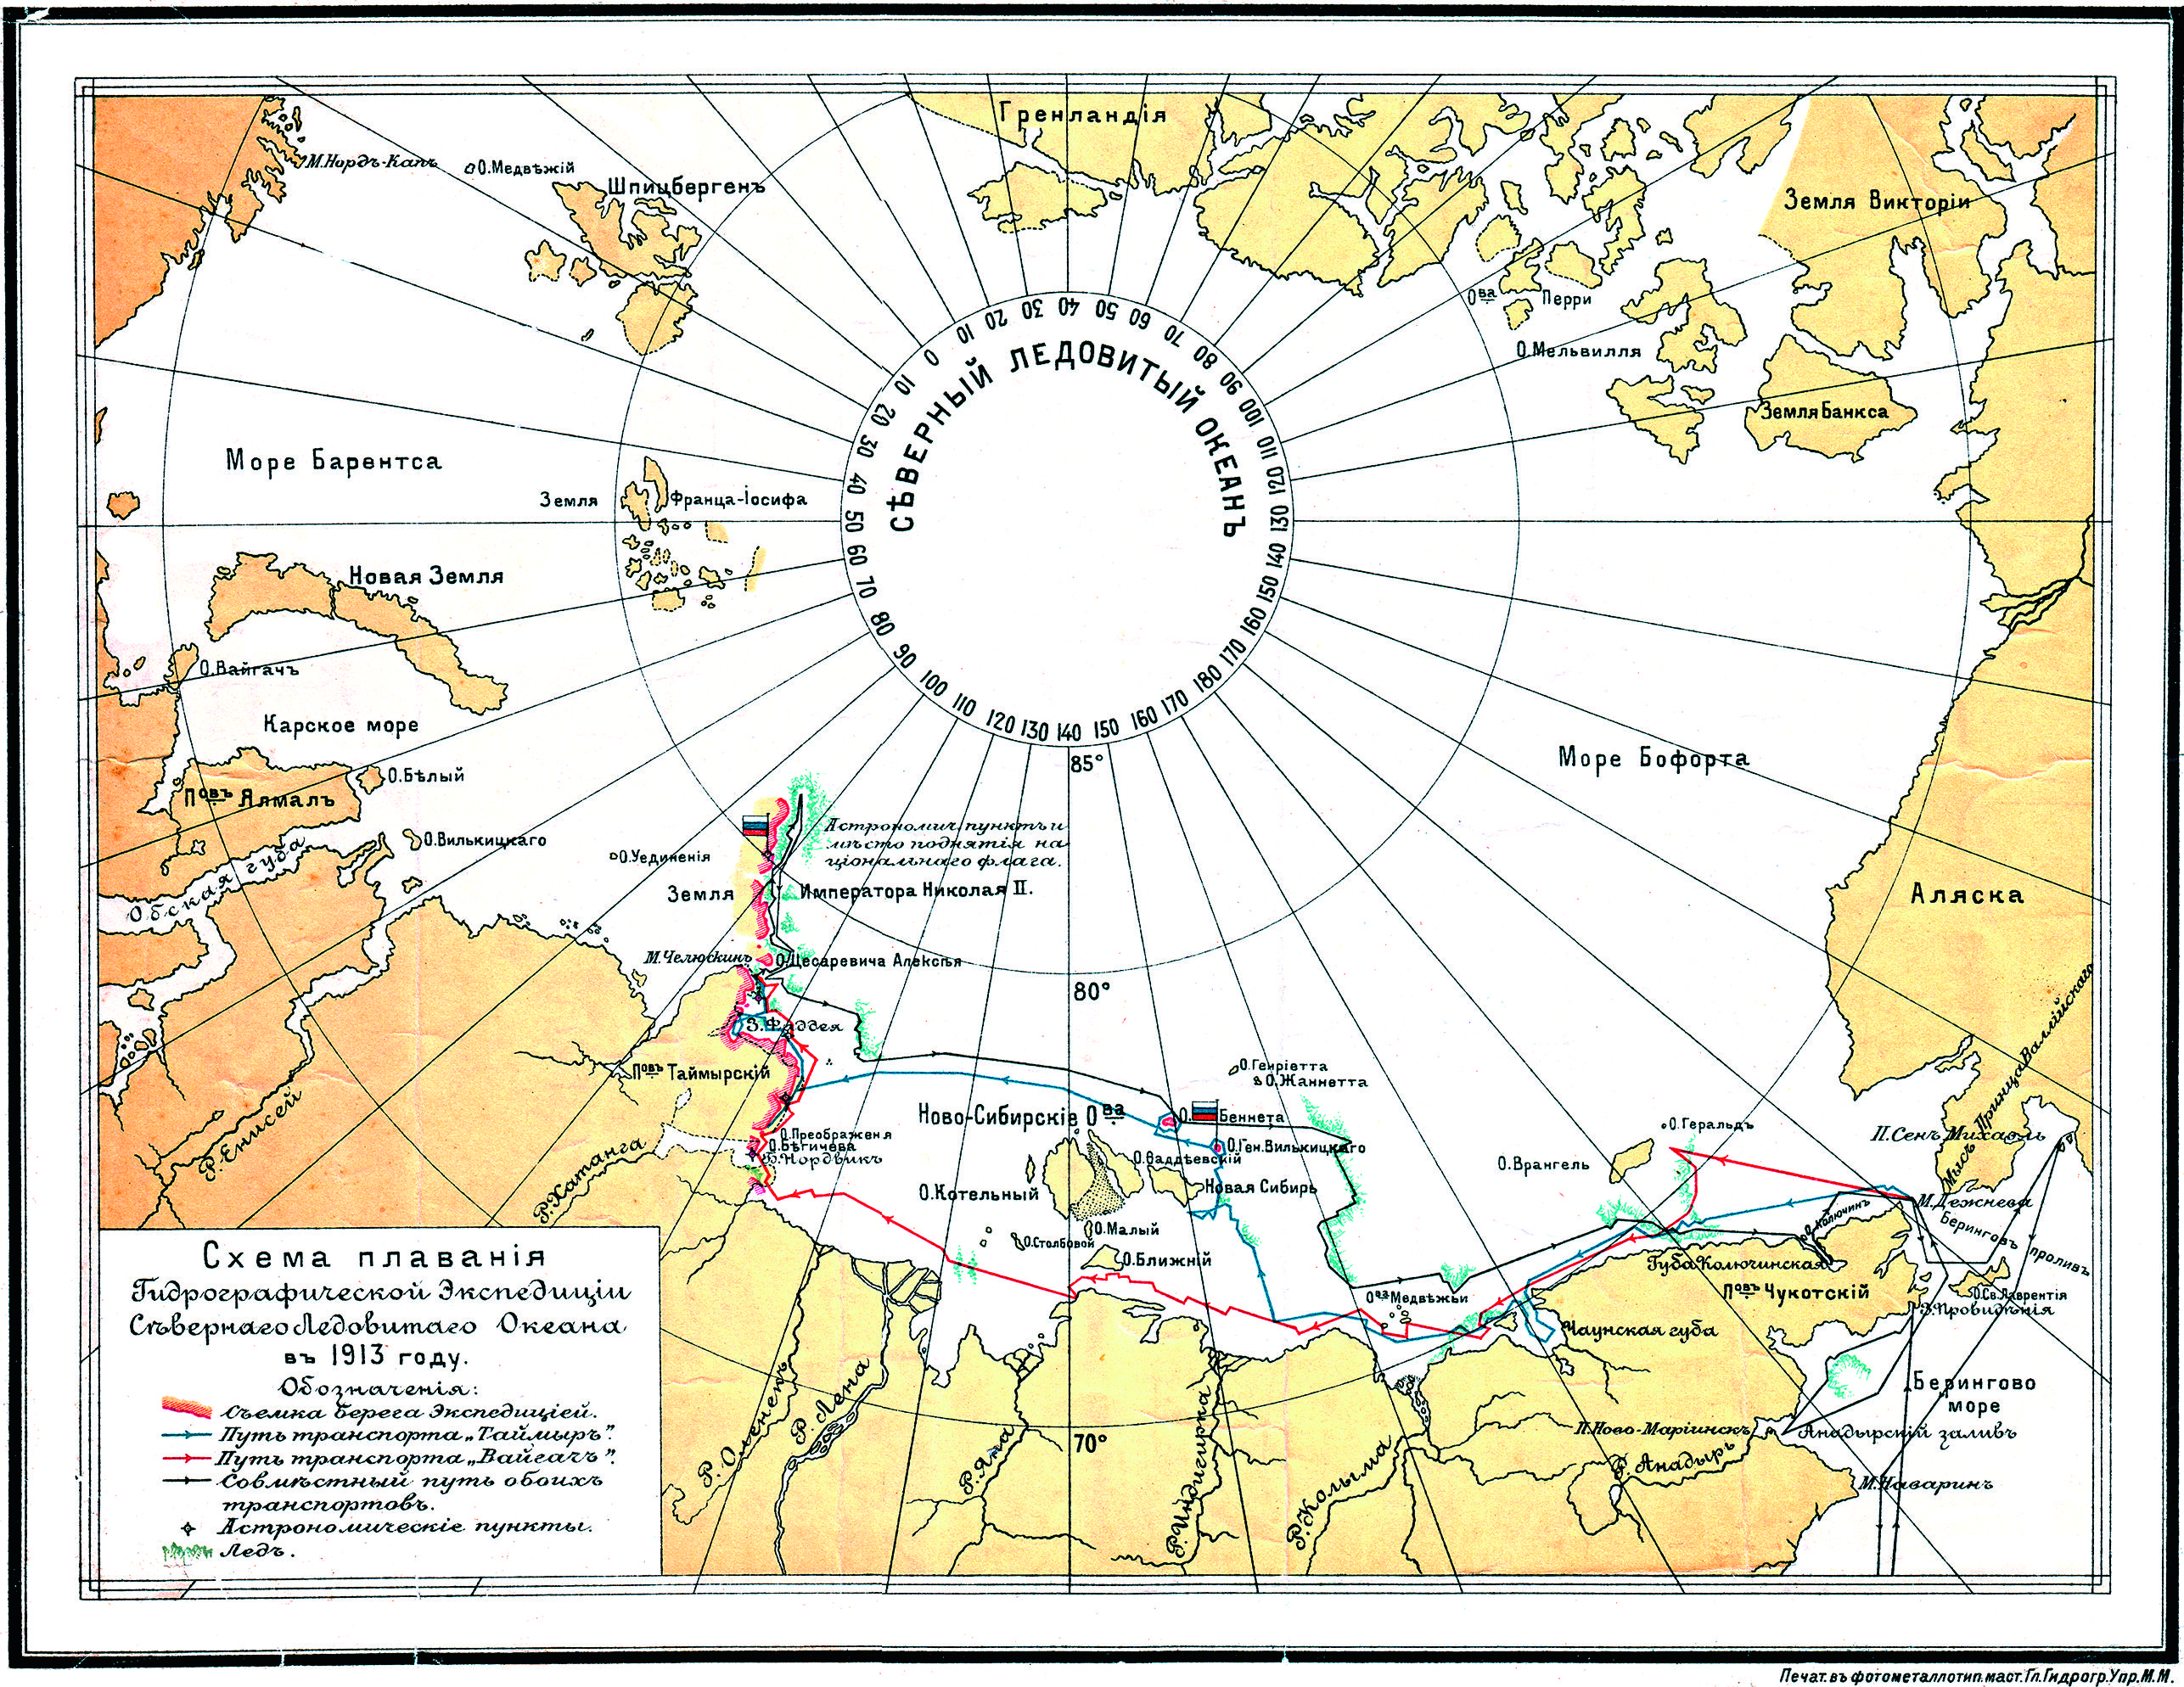 Схема плавания Гидрографической экспедиции Северного ледовитого океана в 1913 г..jpg